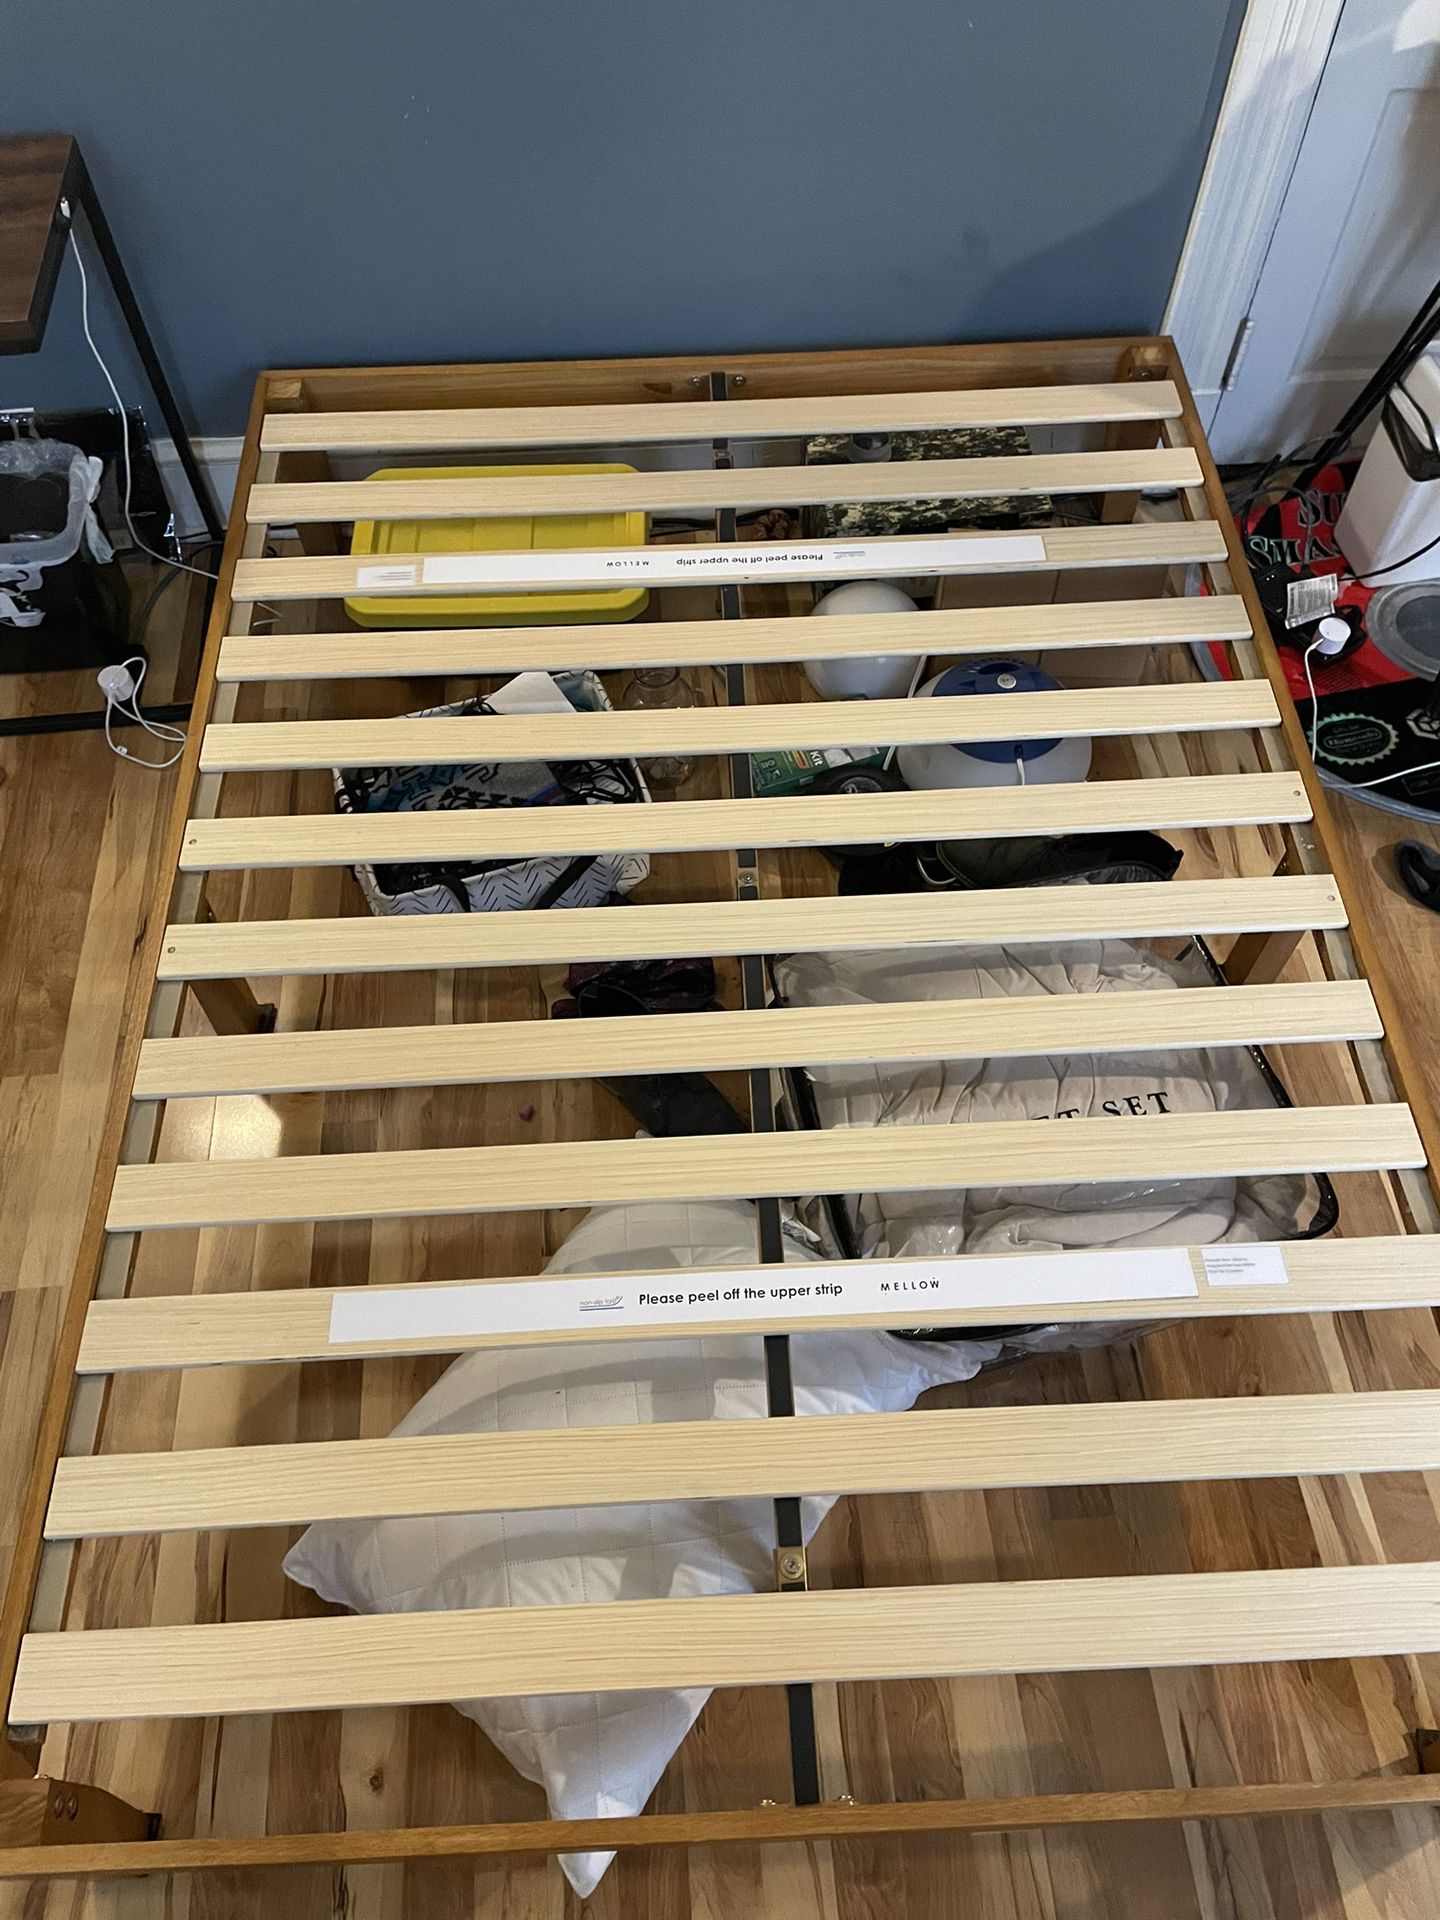 Full Bed Frame (disassembled)